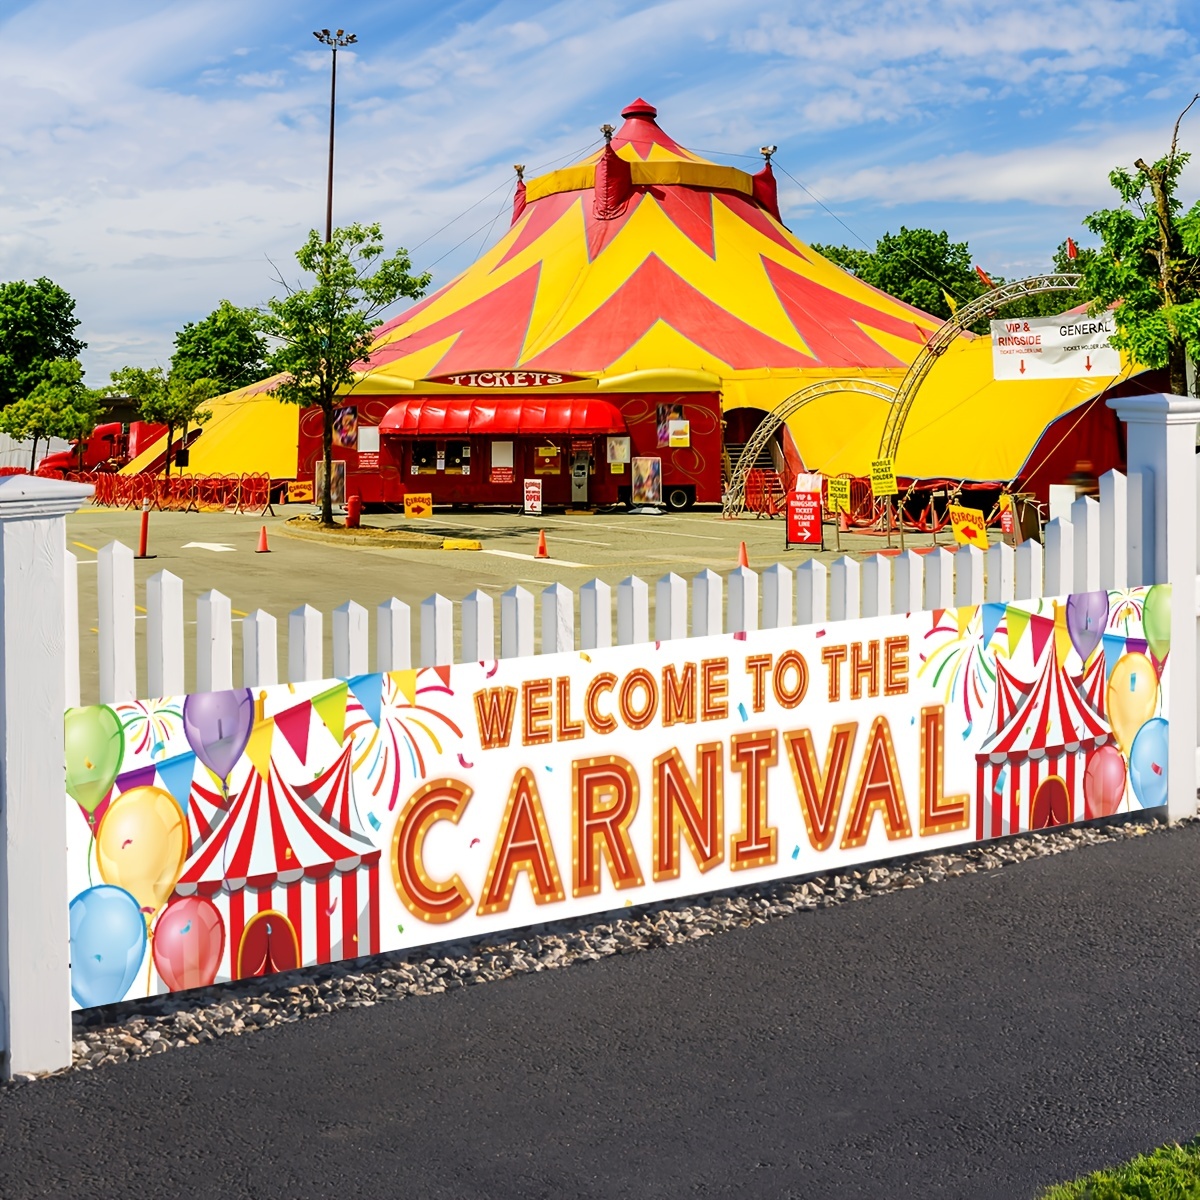  Decoraciones de fiesta temática de carnaval, suministros de  fiesta de cumpleaños de carnaval, decoraciones de fiesta de circo,  decoraciones de carnaval para eventos, decoraciones de carnaval de circo  para fiestas de